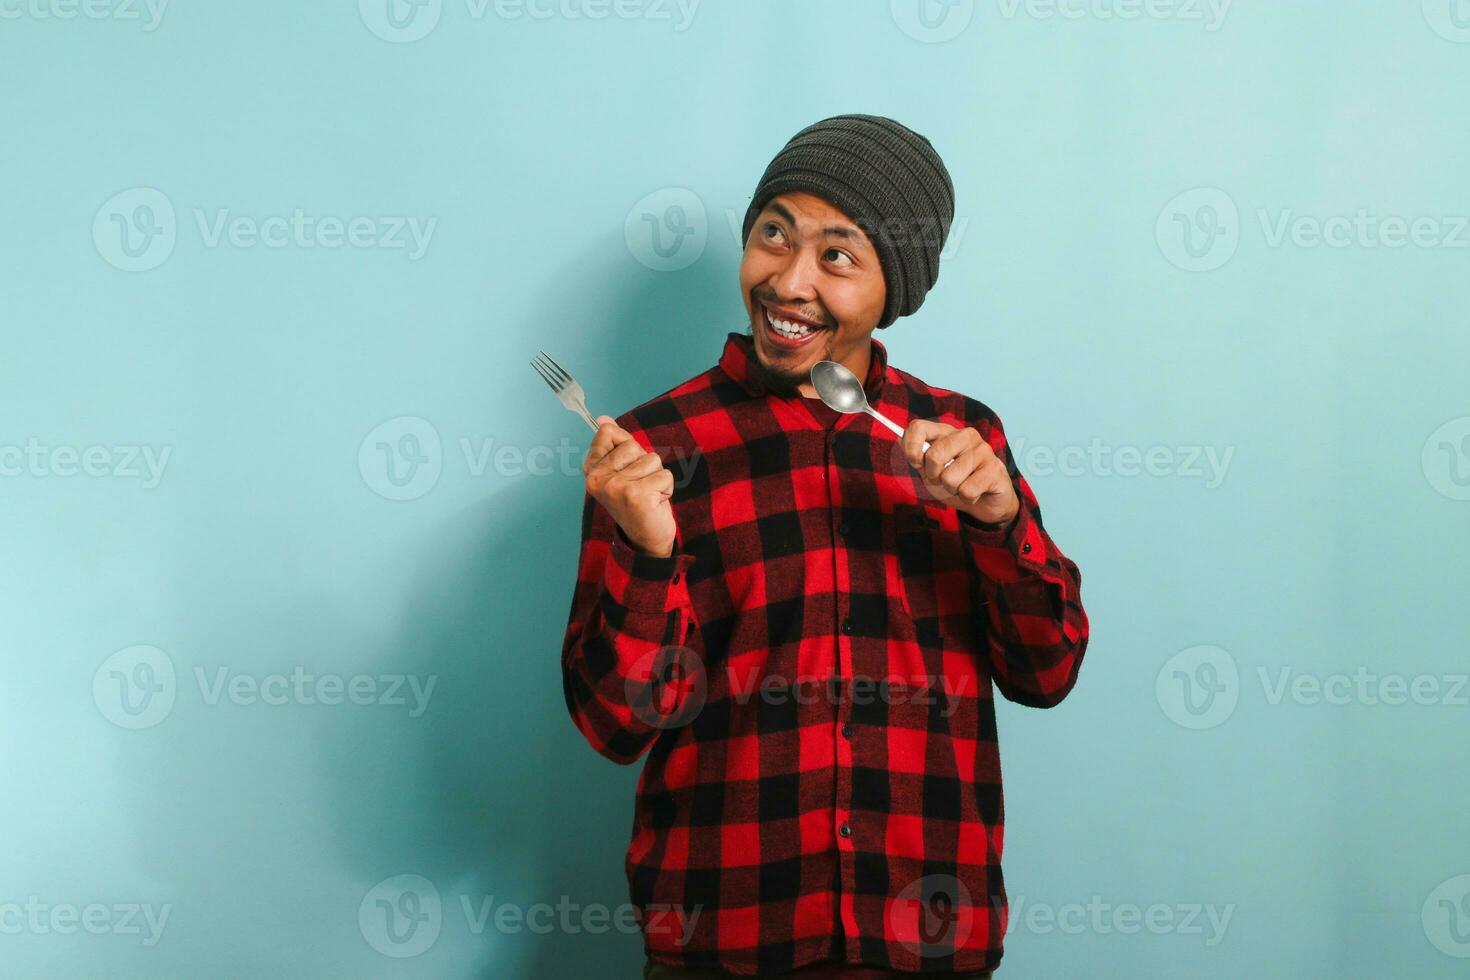 upphetsad ung asiatisk man med mössa hatt och röd pläd flanell skjorta pekande åt sidan på kopia Plats med en sked och gaffel, som om indikerar en frestande måltid eller mat alternativ, isolerat på en blå bakgrund foto